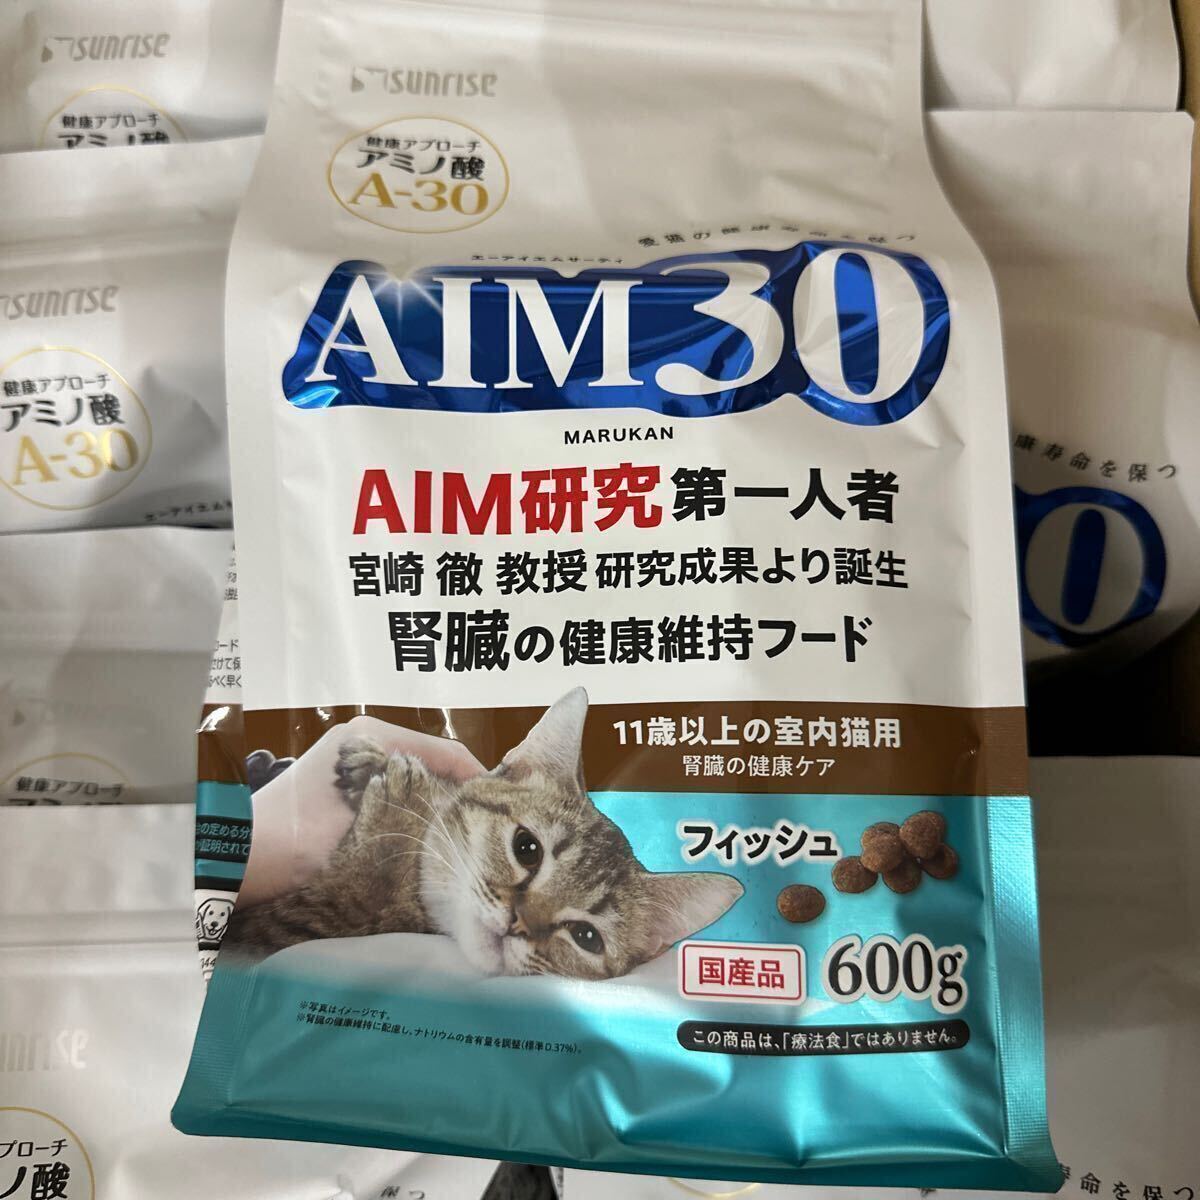 1 иен ~*AIM30 11 лет и больше. салон кошка для ... здоровье уход рыба 3 кейс M13-3